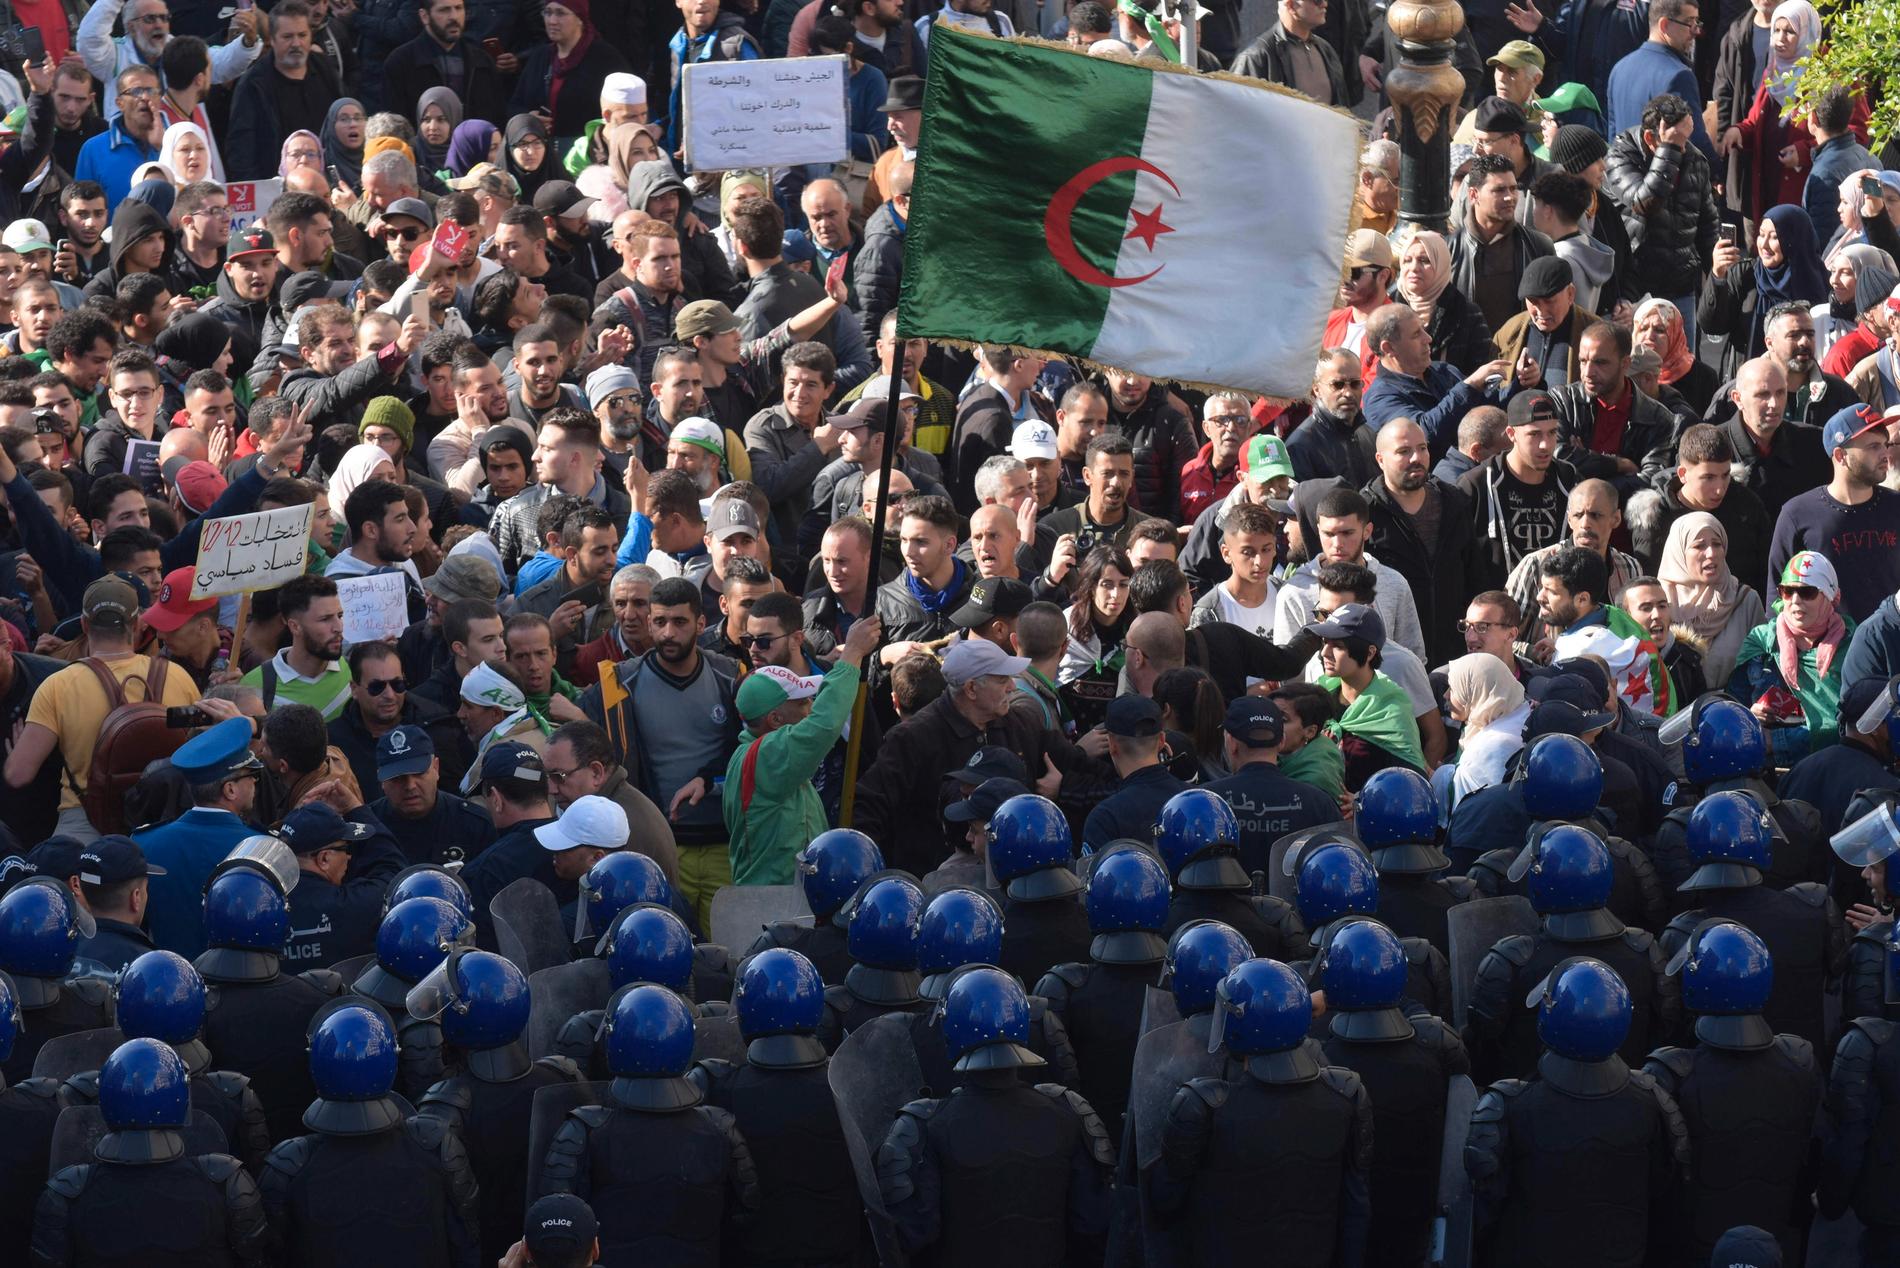 Säkerhetsstyrkor möter algeriska demonstranter under en protest 11 december 2019.